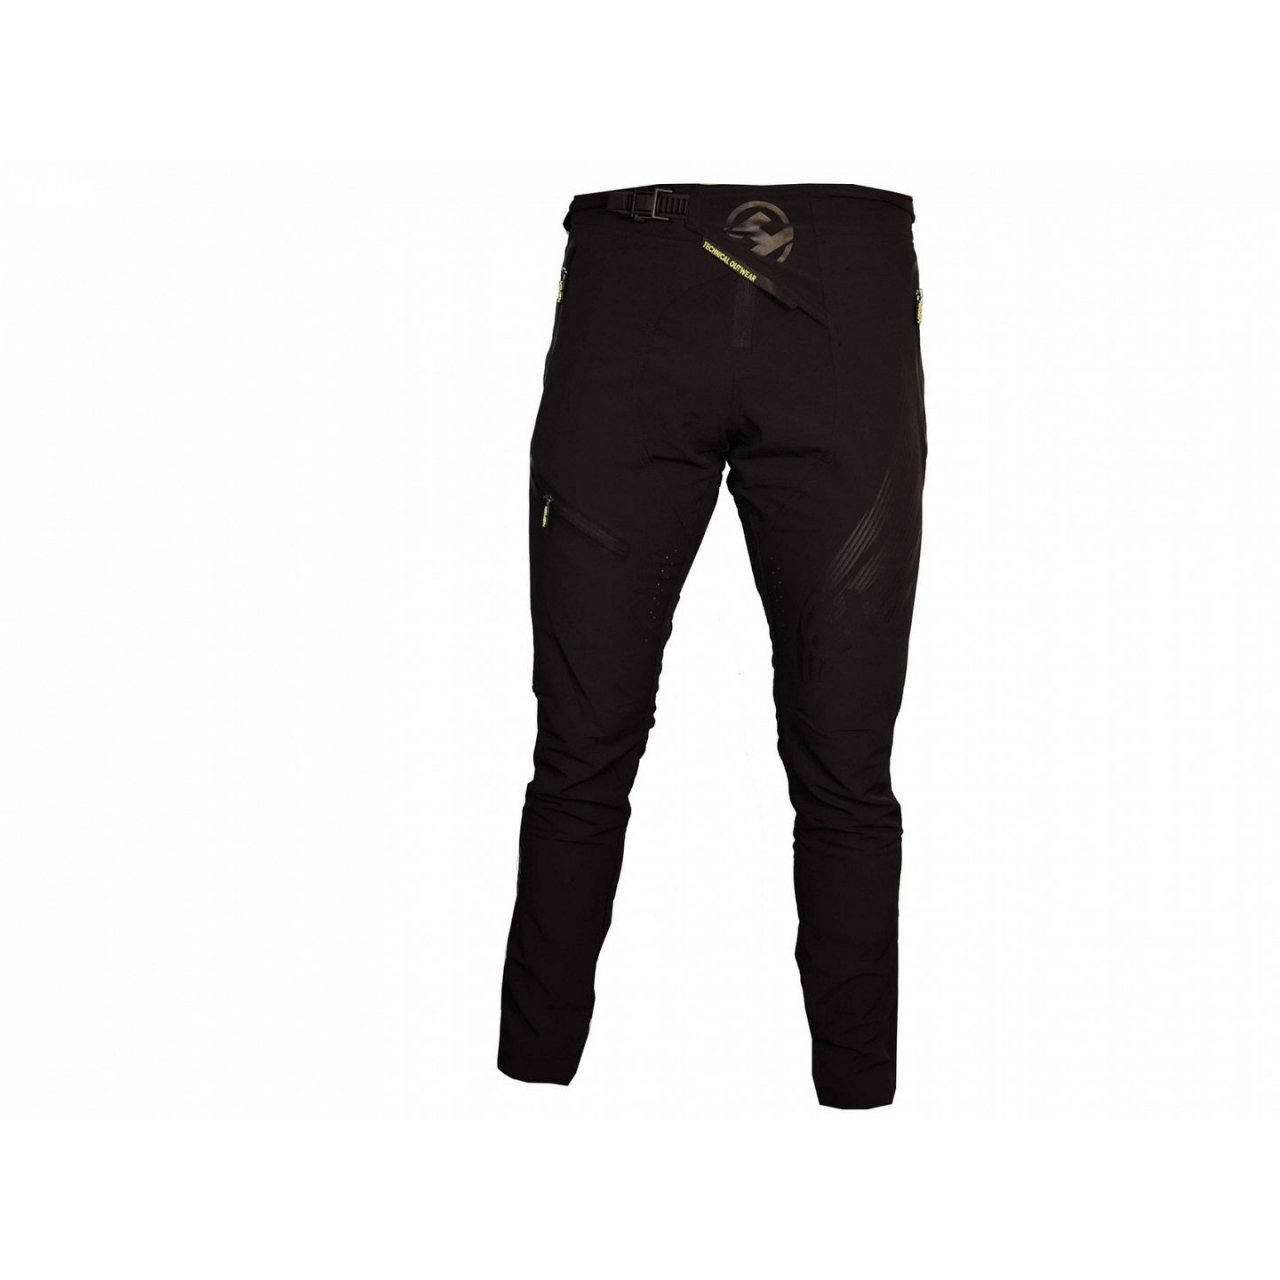 Kalhoty unisex Haven Energizer - černé, XS